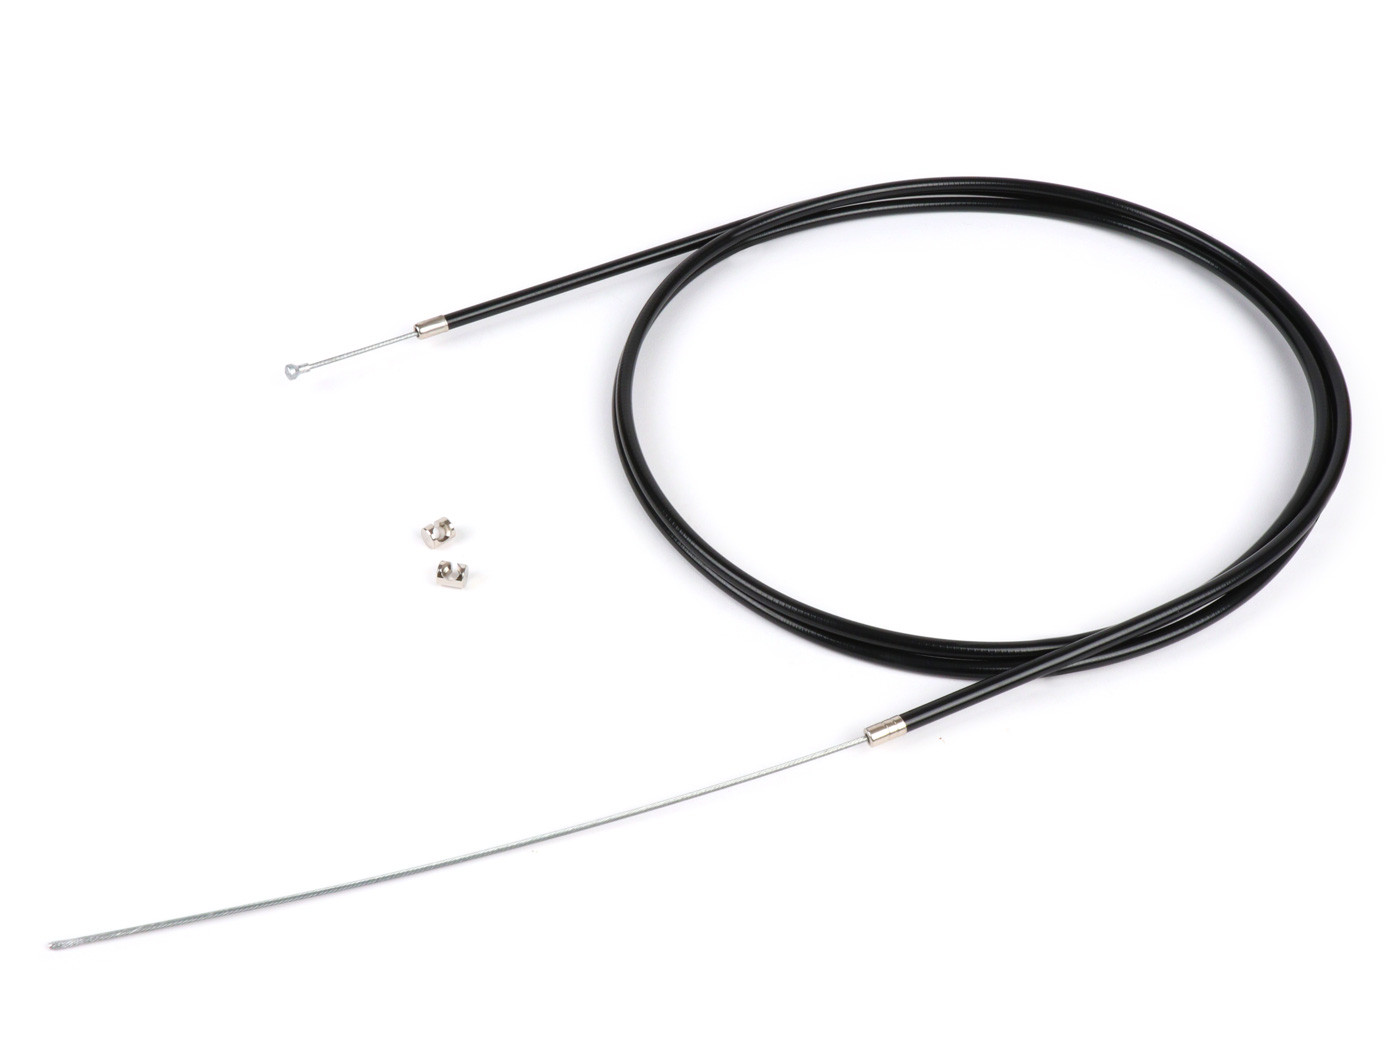 Univerzális kábel BGM Original Ř=1.9mm x 2500mm, köpeny= 2200mm, bimbó Ř=8.0mm x 8mm, belső köpeny PE, fekete, kuplungkábelként, első fékkábelként használatos.